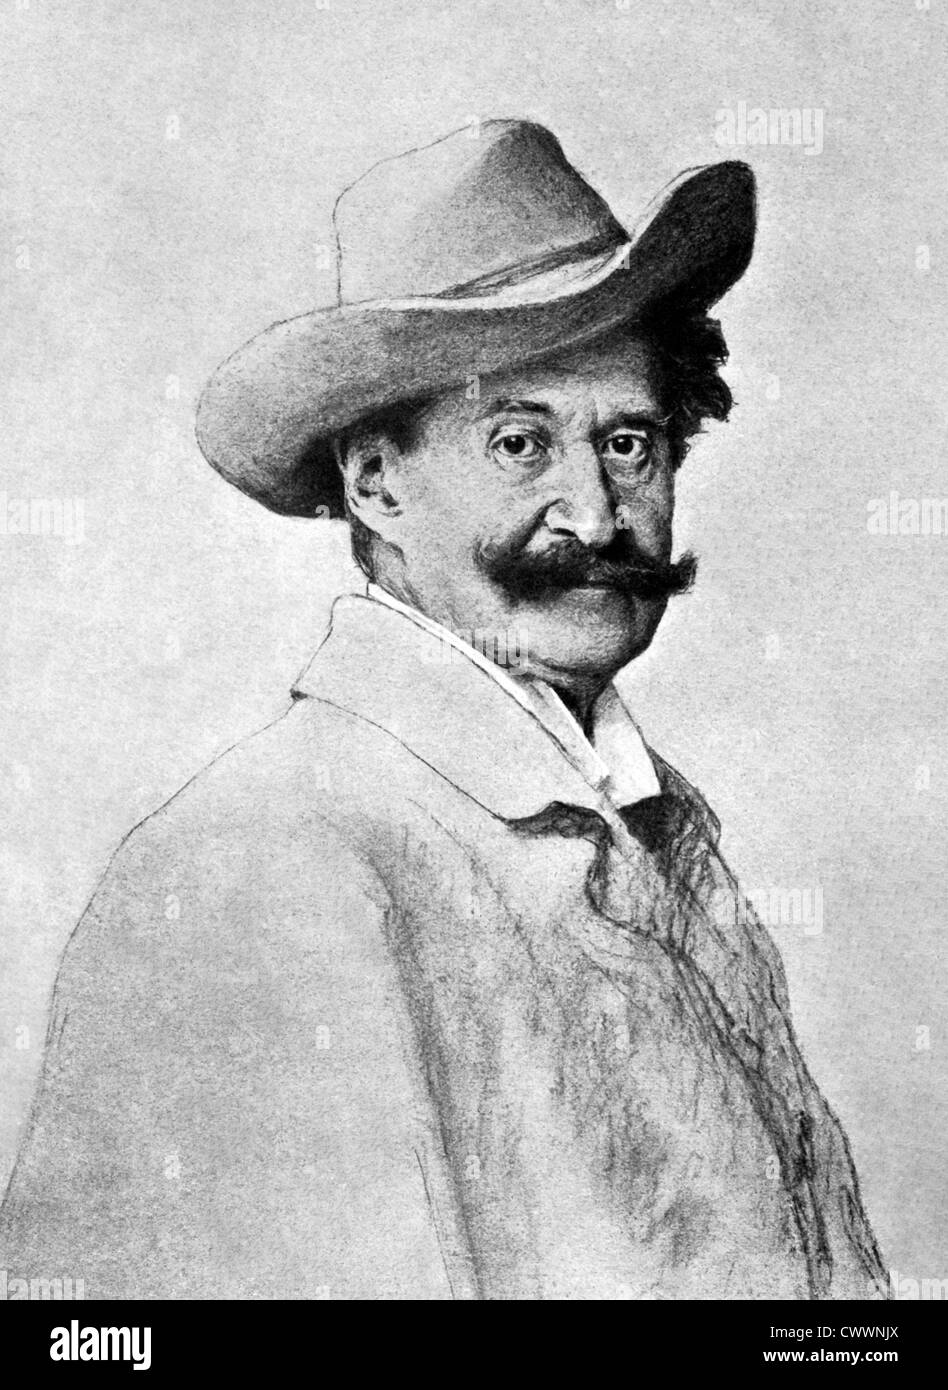 Johann Strauss II (1825 – 1899) auf antiken Druck aus dem Jahre 1899. Österreichischer Komponist. Stockfoto